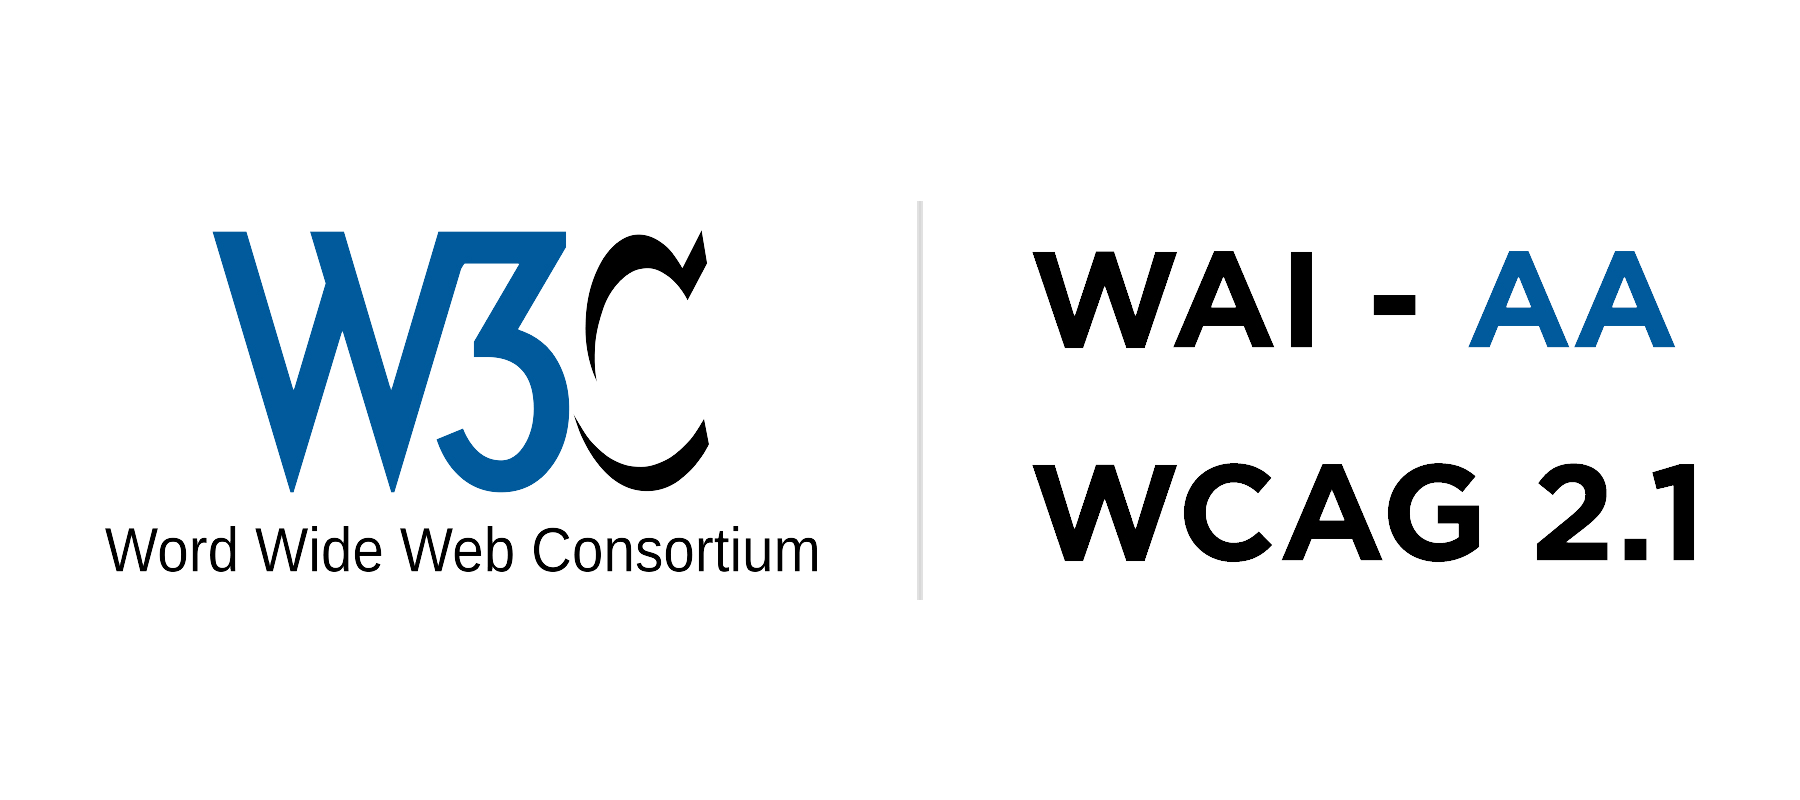 Logotipo de acreditación del cumplimiento de las pautas nivel AA del w3c según el WCAG 2.1